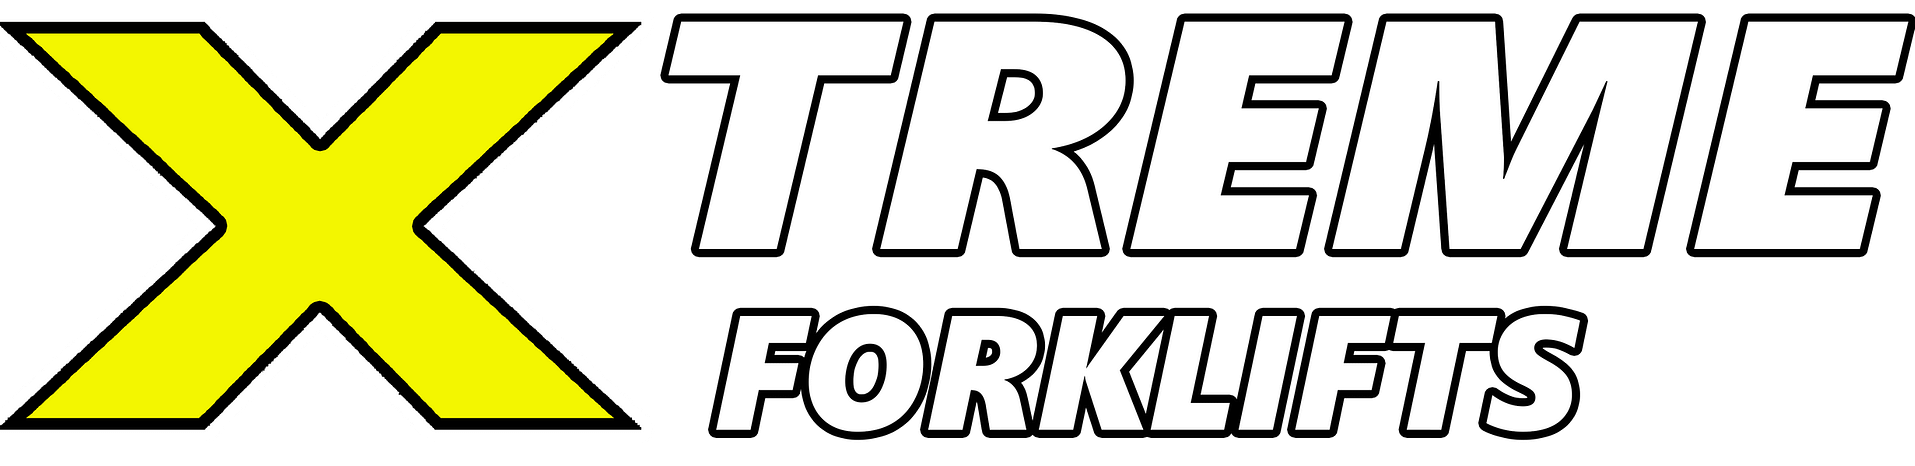 Xtreme Forklifts (Med) Logo